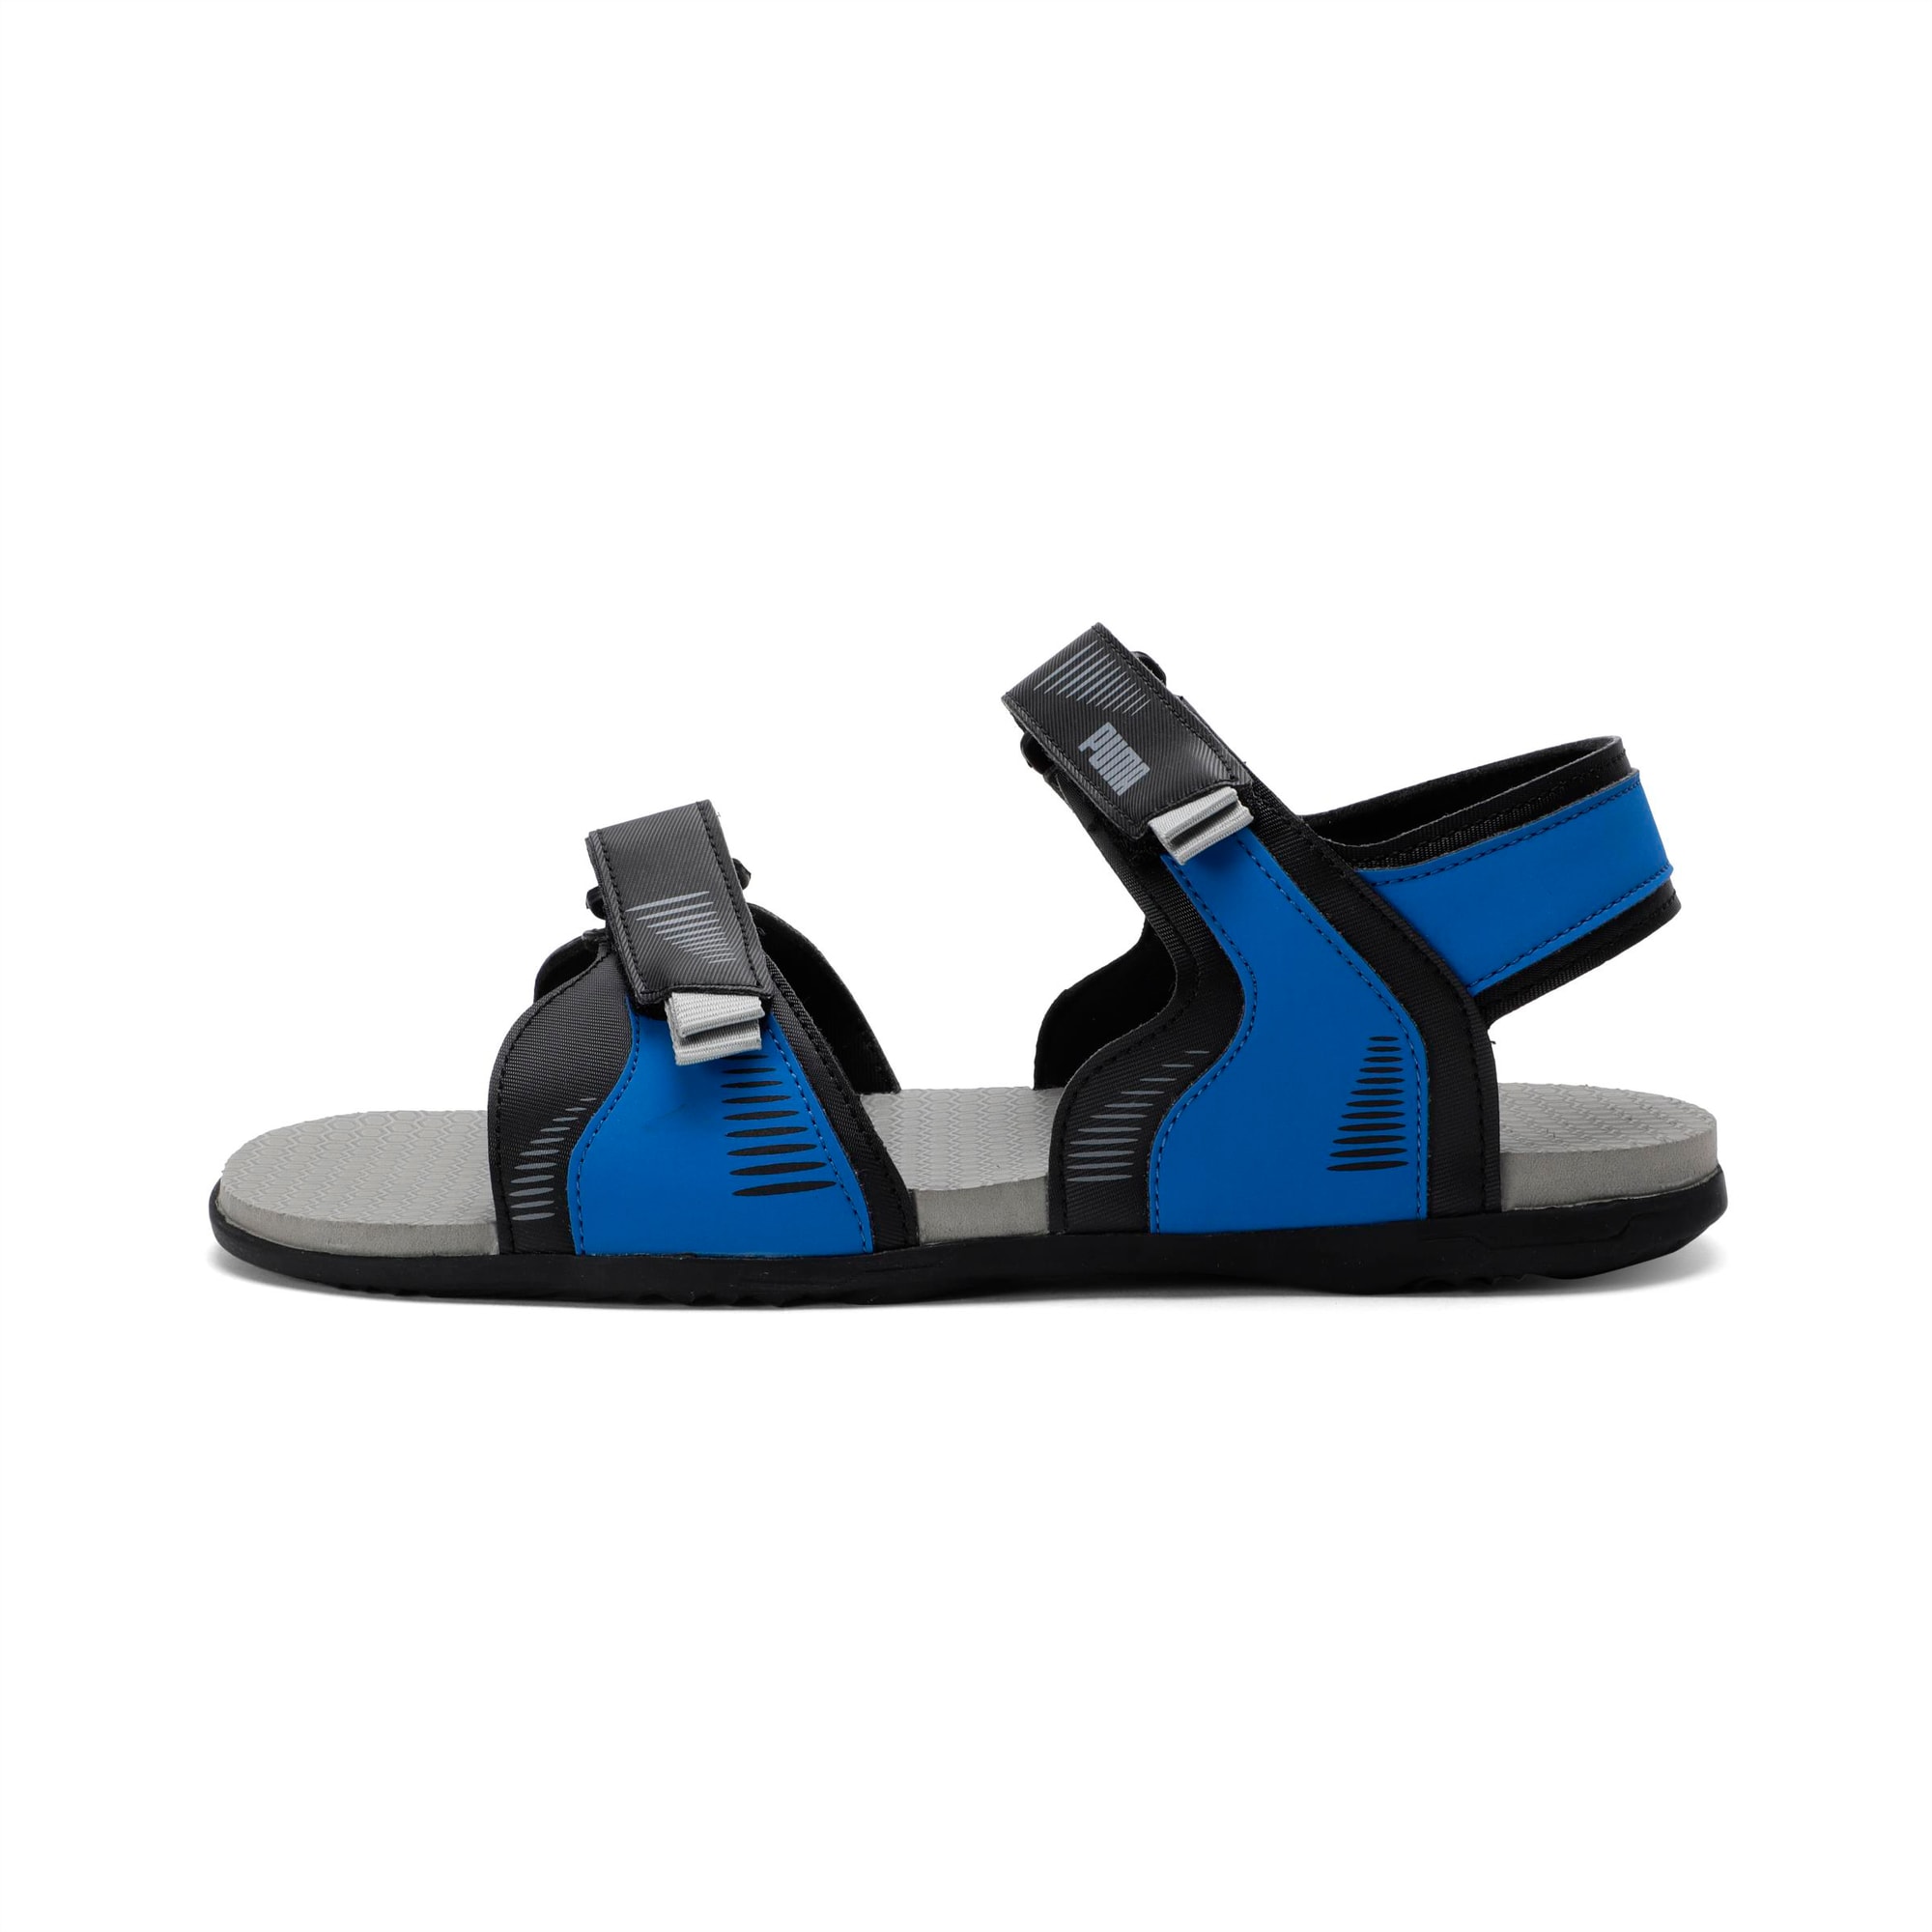 Puma sandals men blue